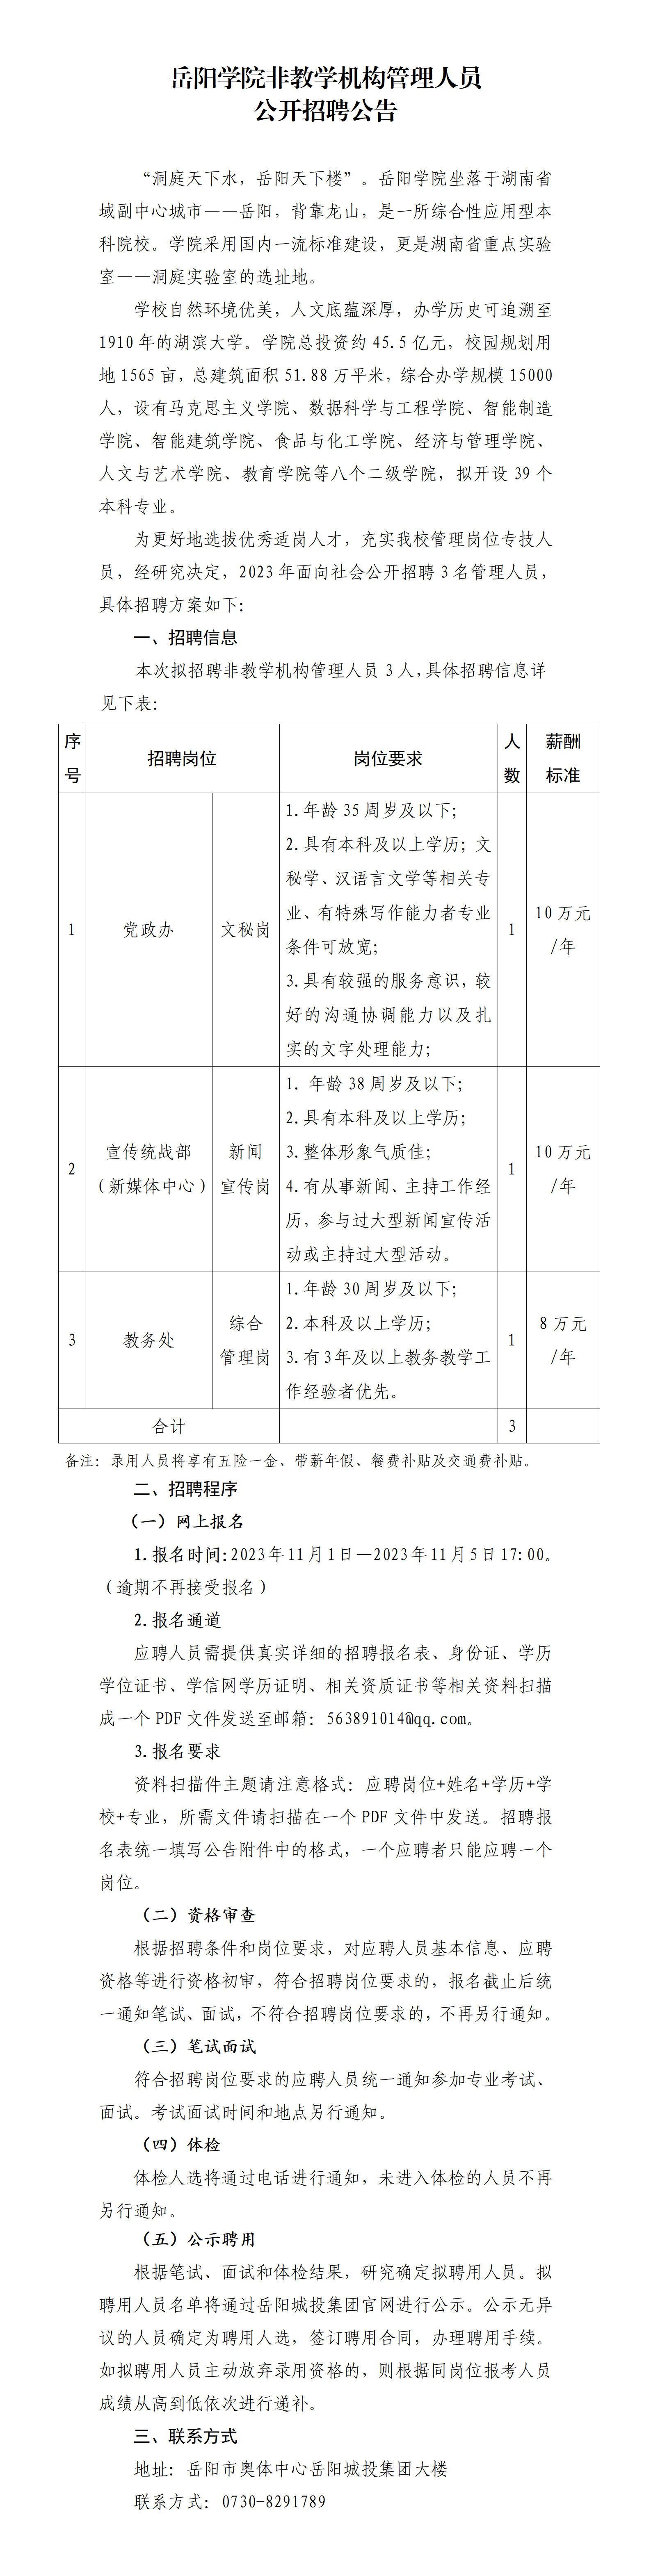 岳阳学院非教学机构管理人员管理人员公开招聘公告11.1_01.png